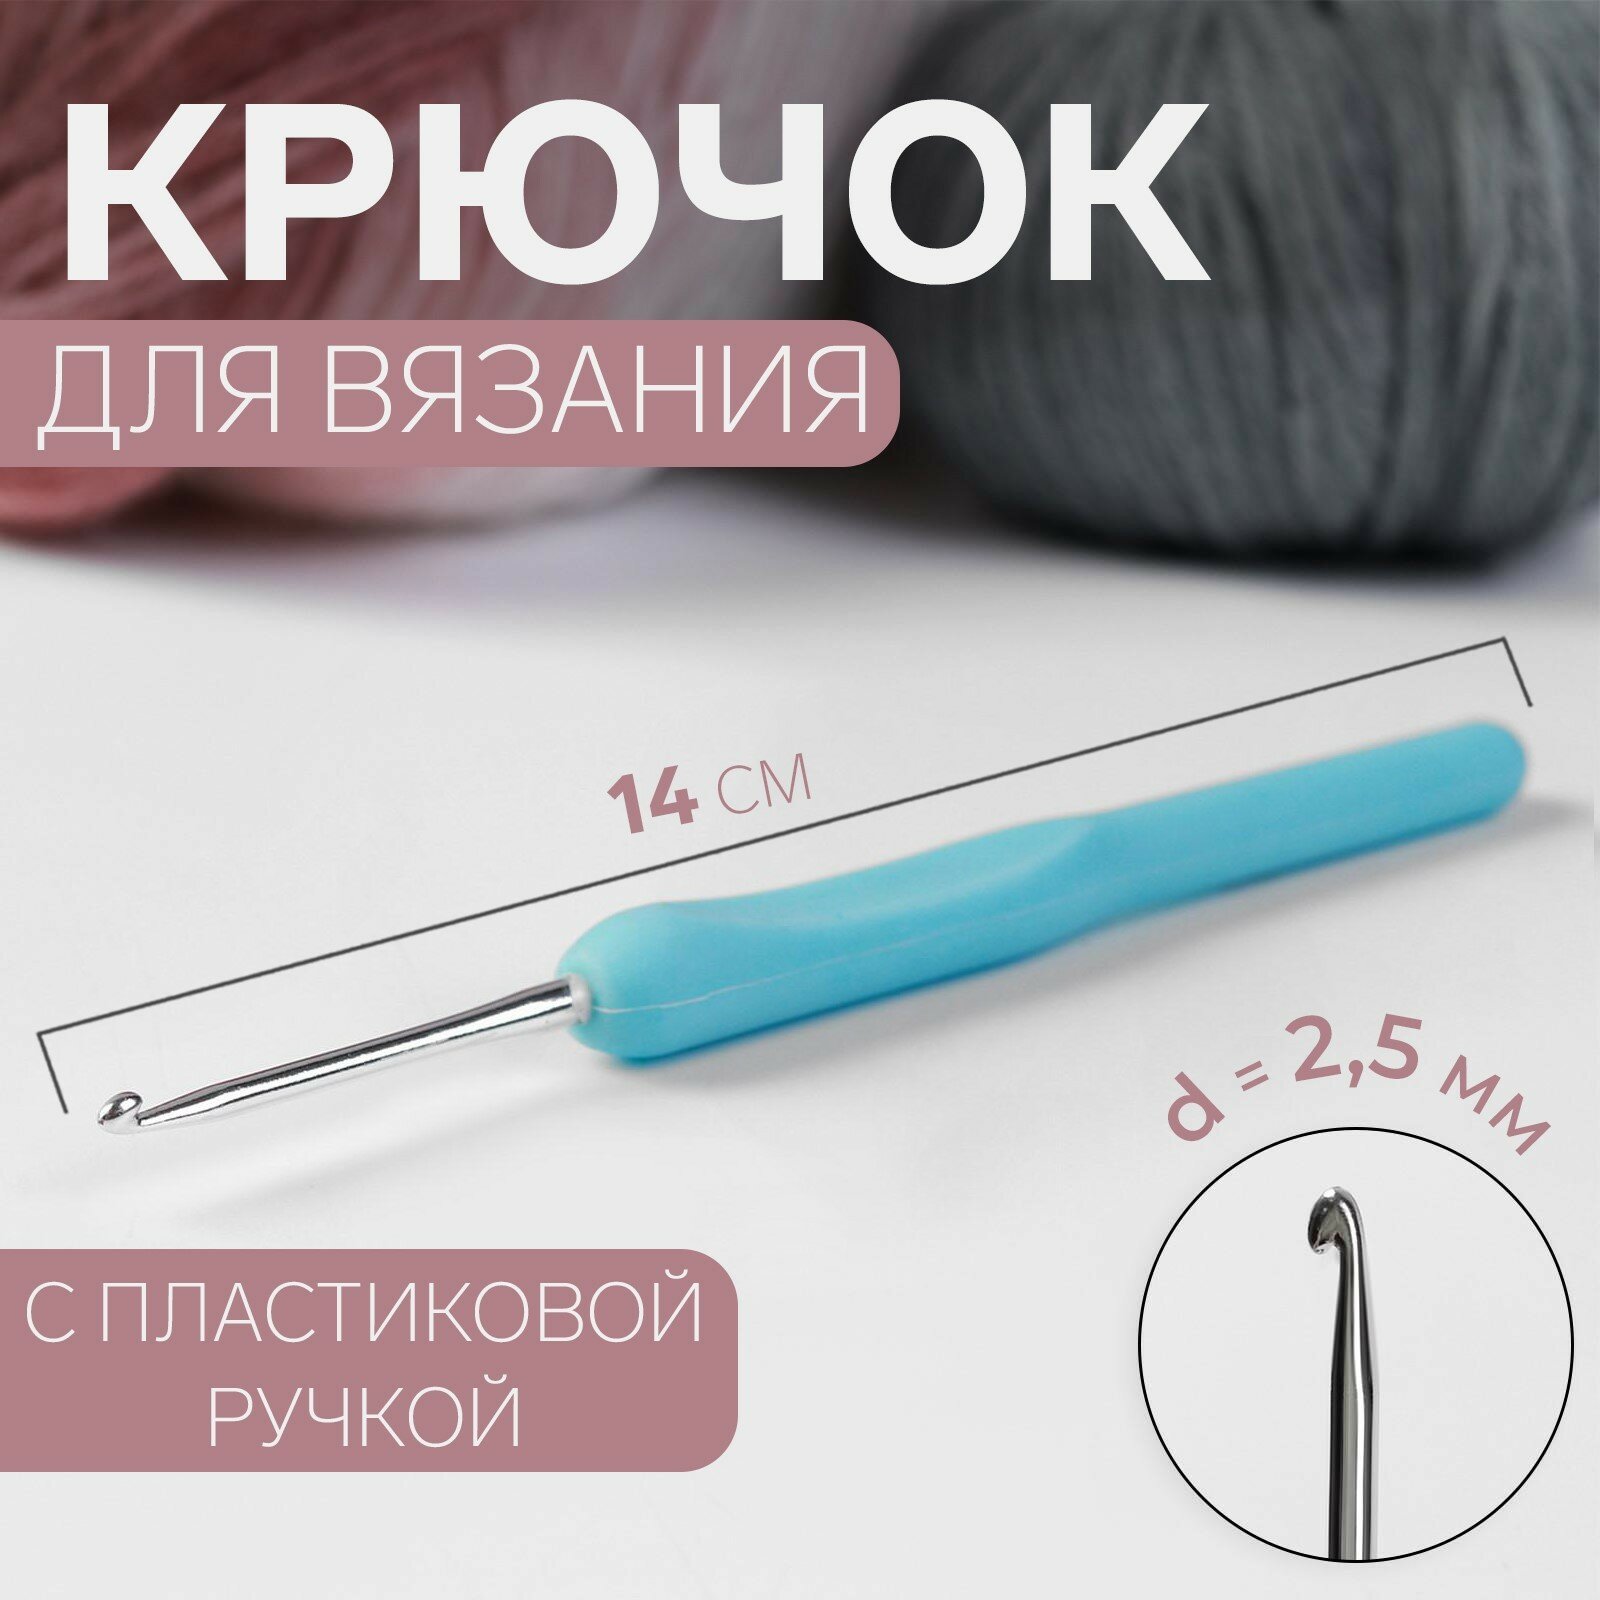 Крючок для вязания, с пластиковой ручкой, d = 2,5 мм, 14 см, цвет голубой (4шт.)